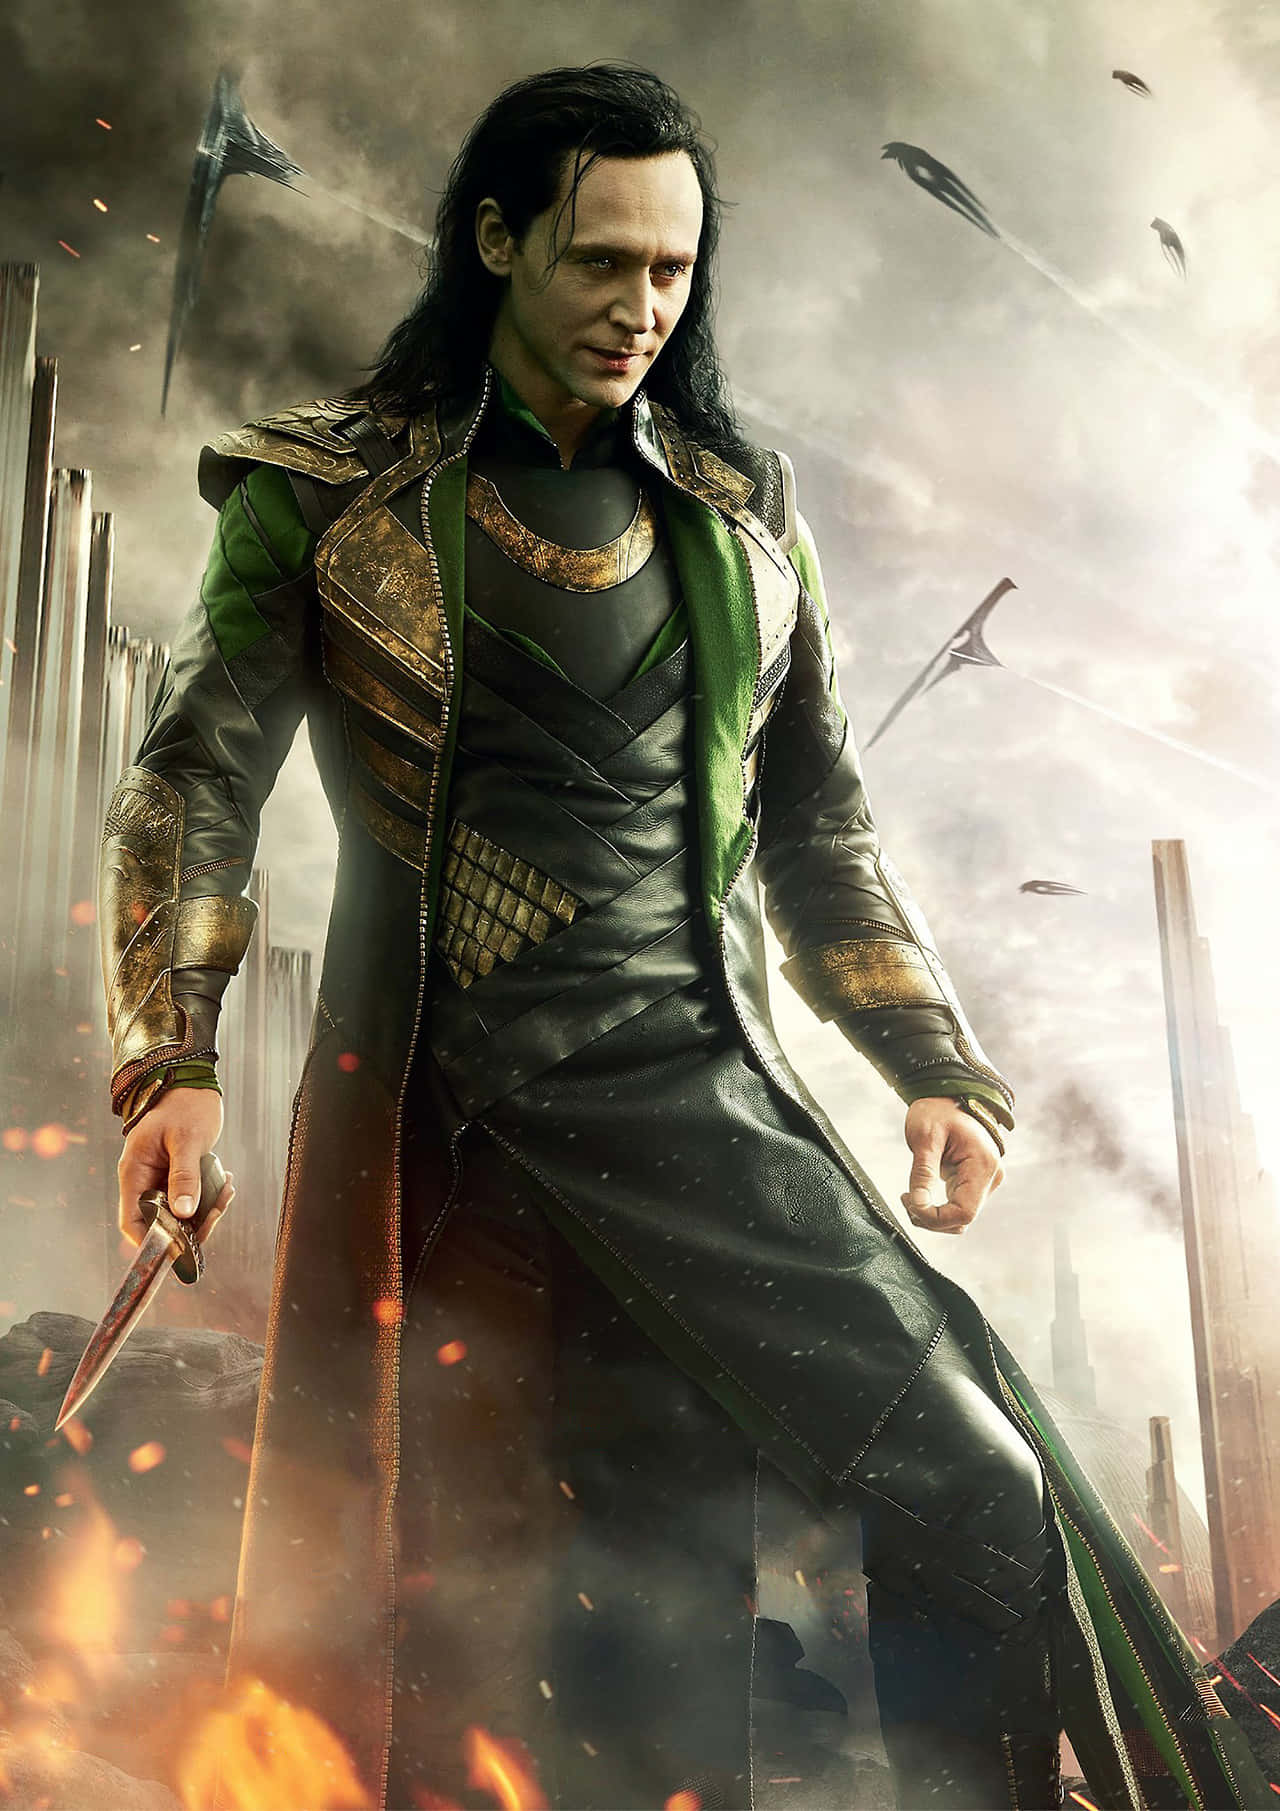 100+] Marvel Loki Wallpapers